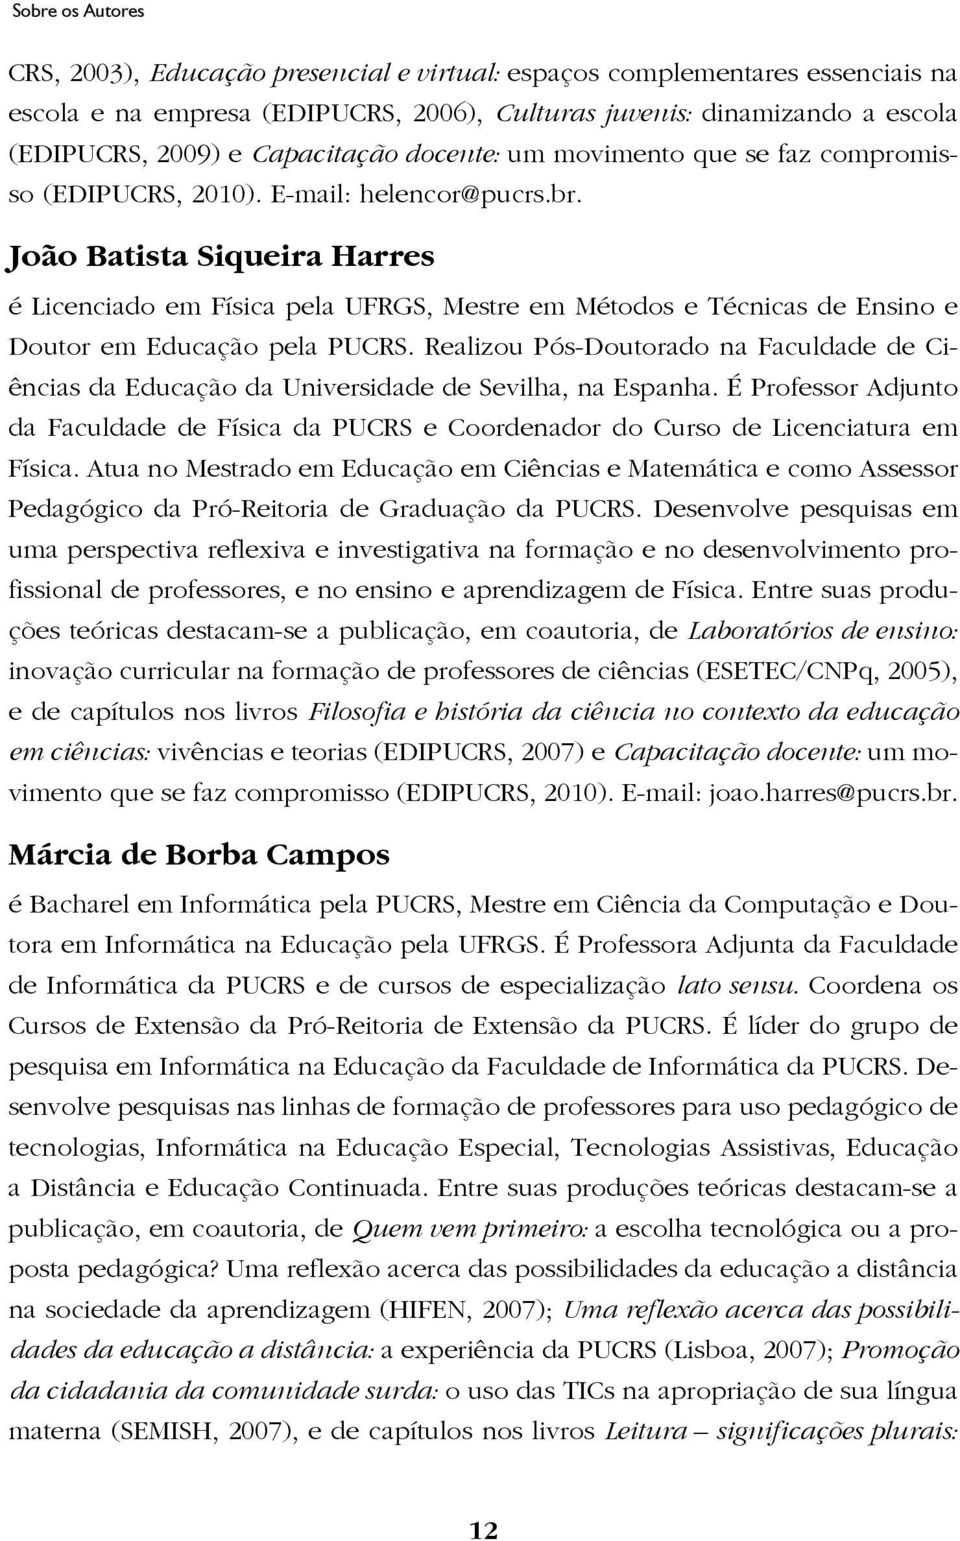 João Batista Siqueira Harres é Licenciado em Física pela UFRGS, Mestre em Métodos e Técnicas de Ensino e Doutor em Educação pela PUCRS.